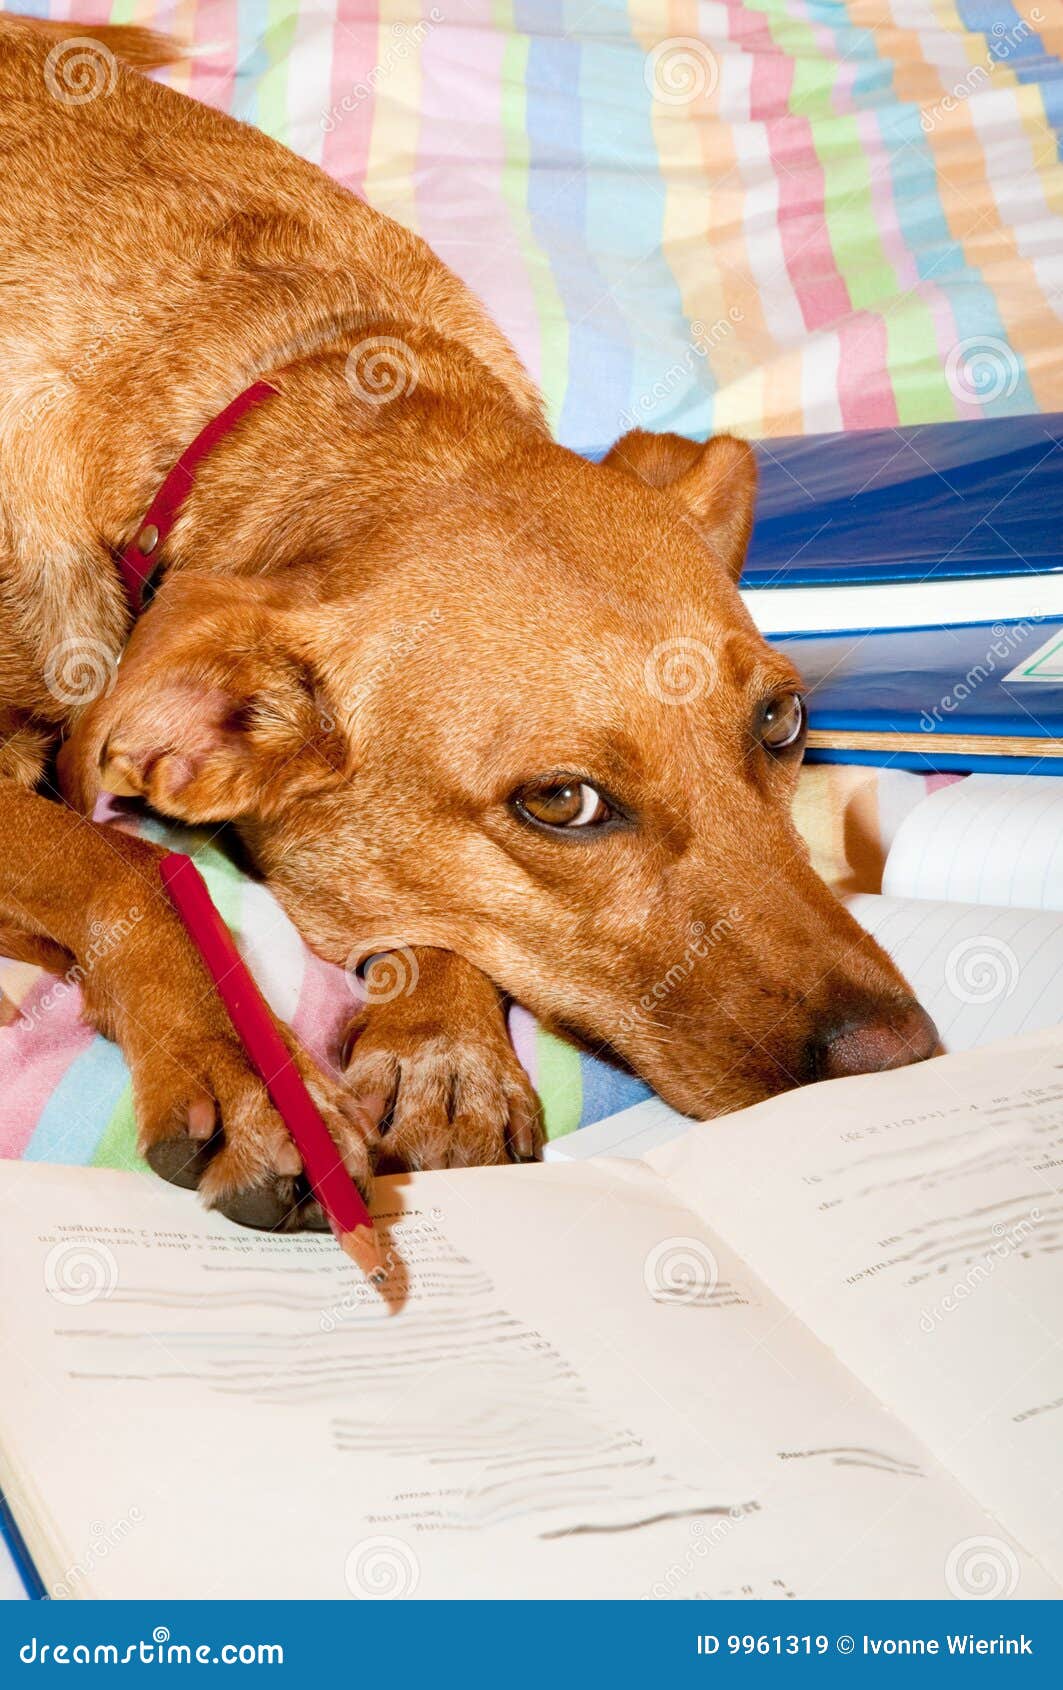 dogs doing homework